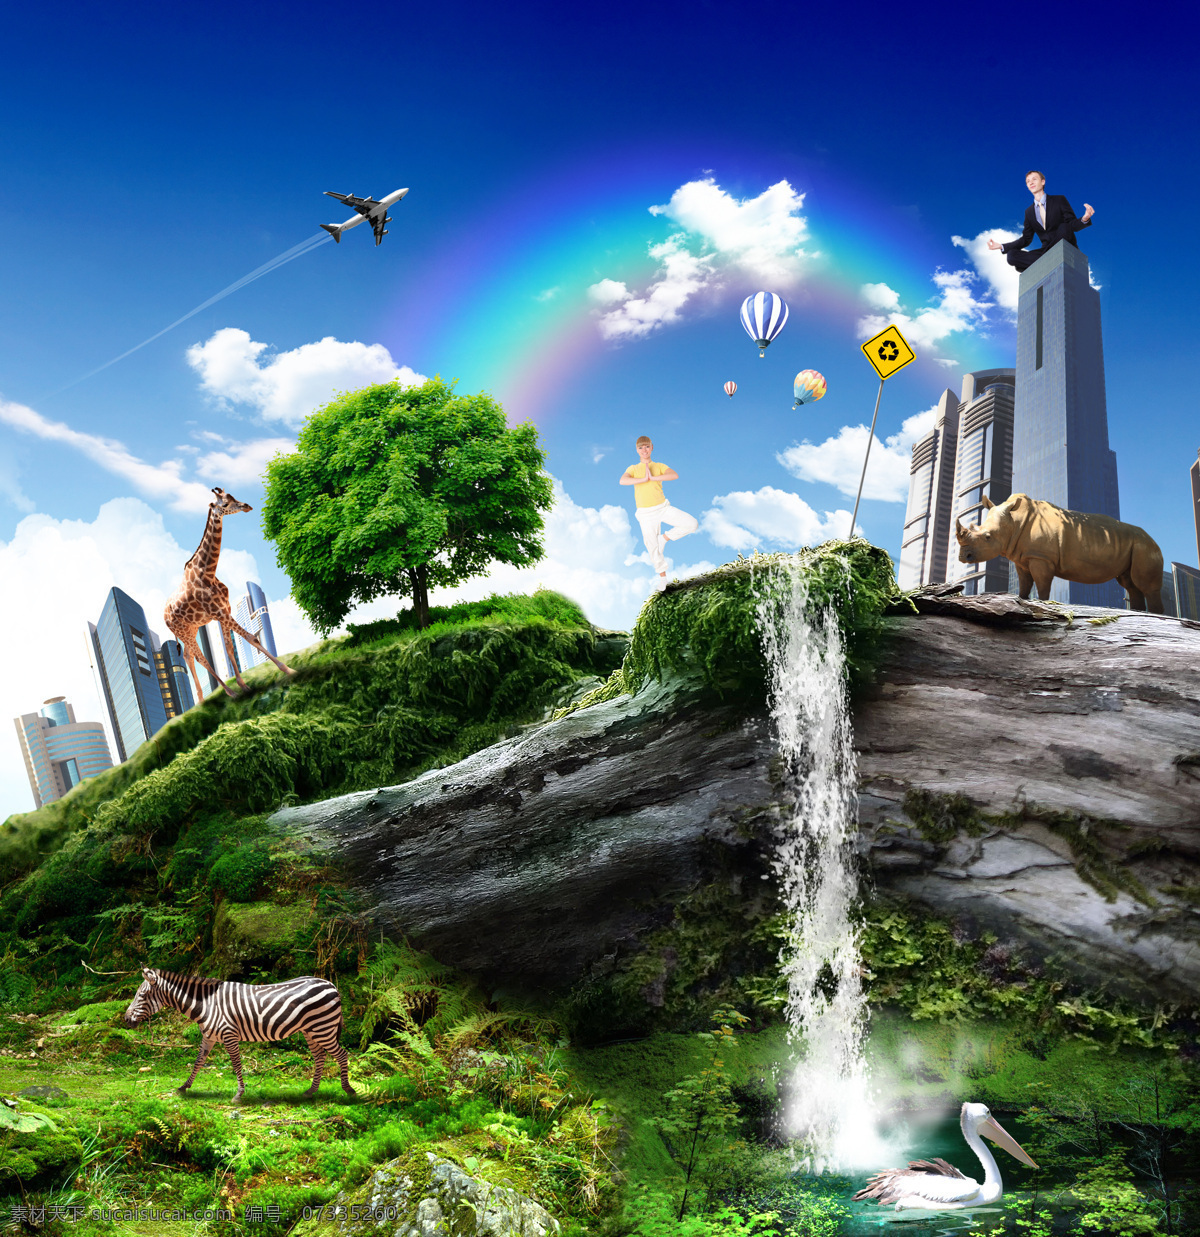 创意 城市 绿色环保 城市环保 高楼大厦 彩虹 瀑布 节能环保 生态环保 树木 植物绿化 蓝天白云 环保图片 风景图片